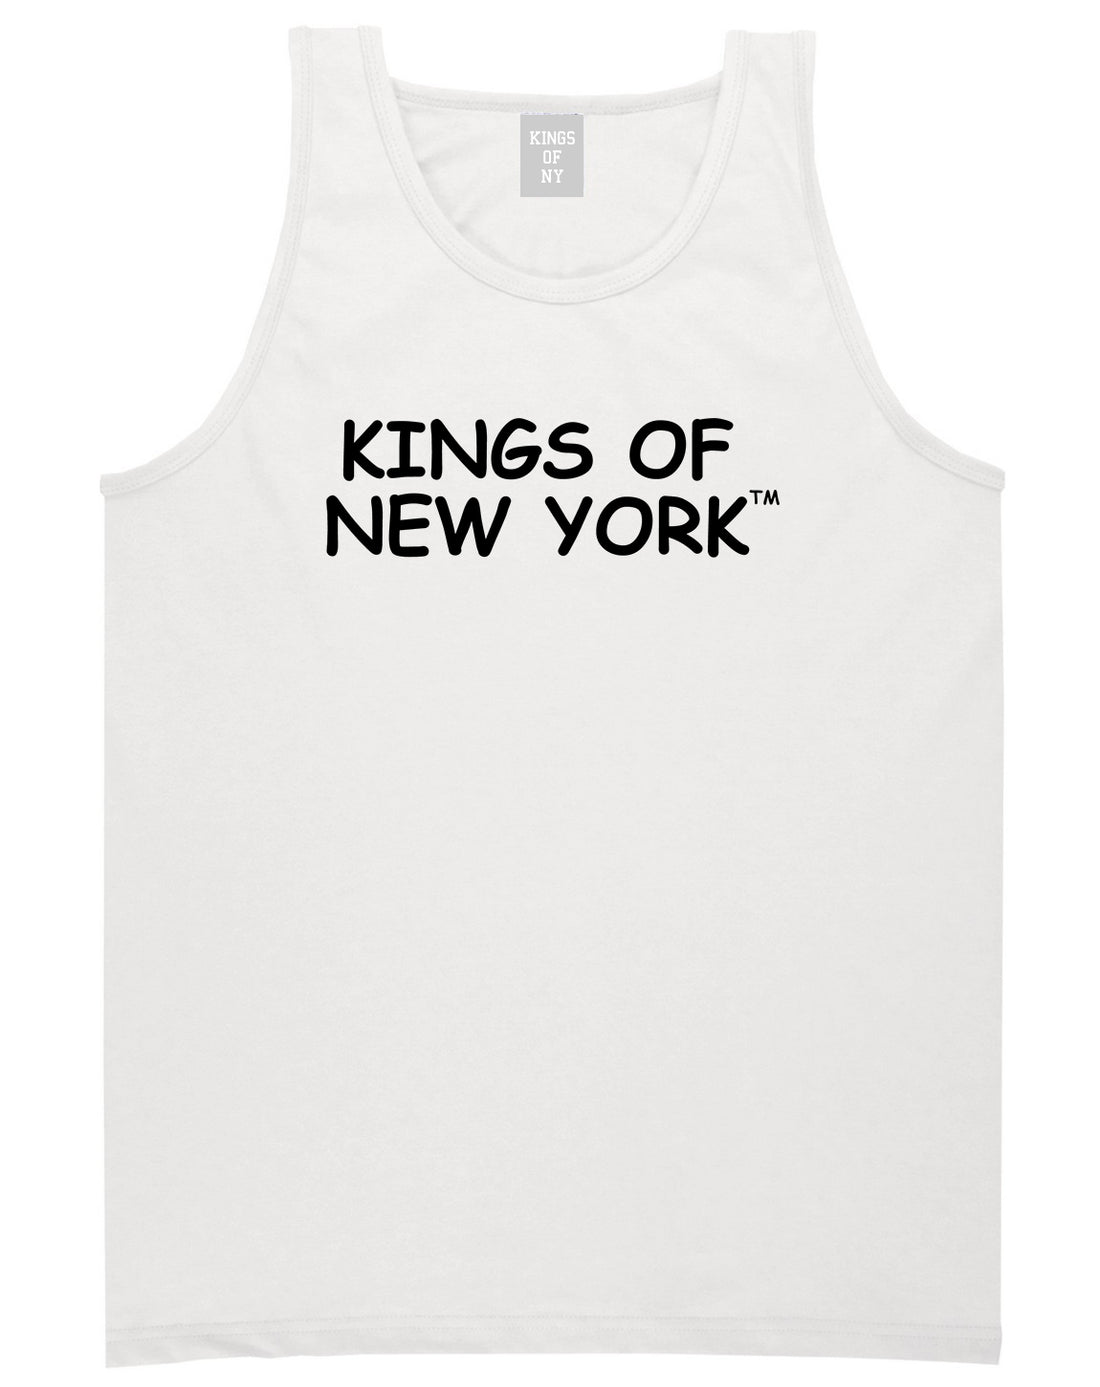 Kings Of New York TM Mens Tank Top T-Shirt White